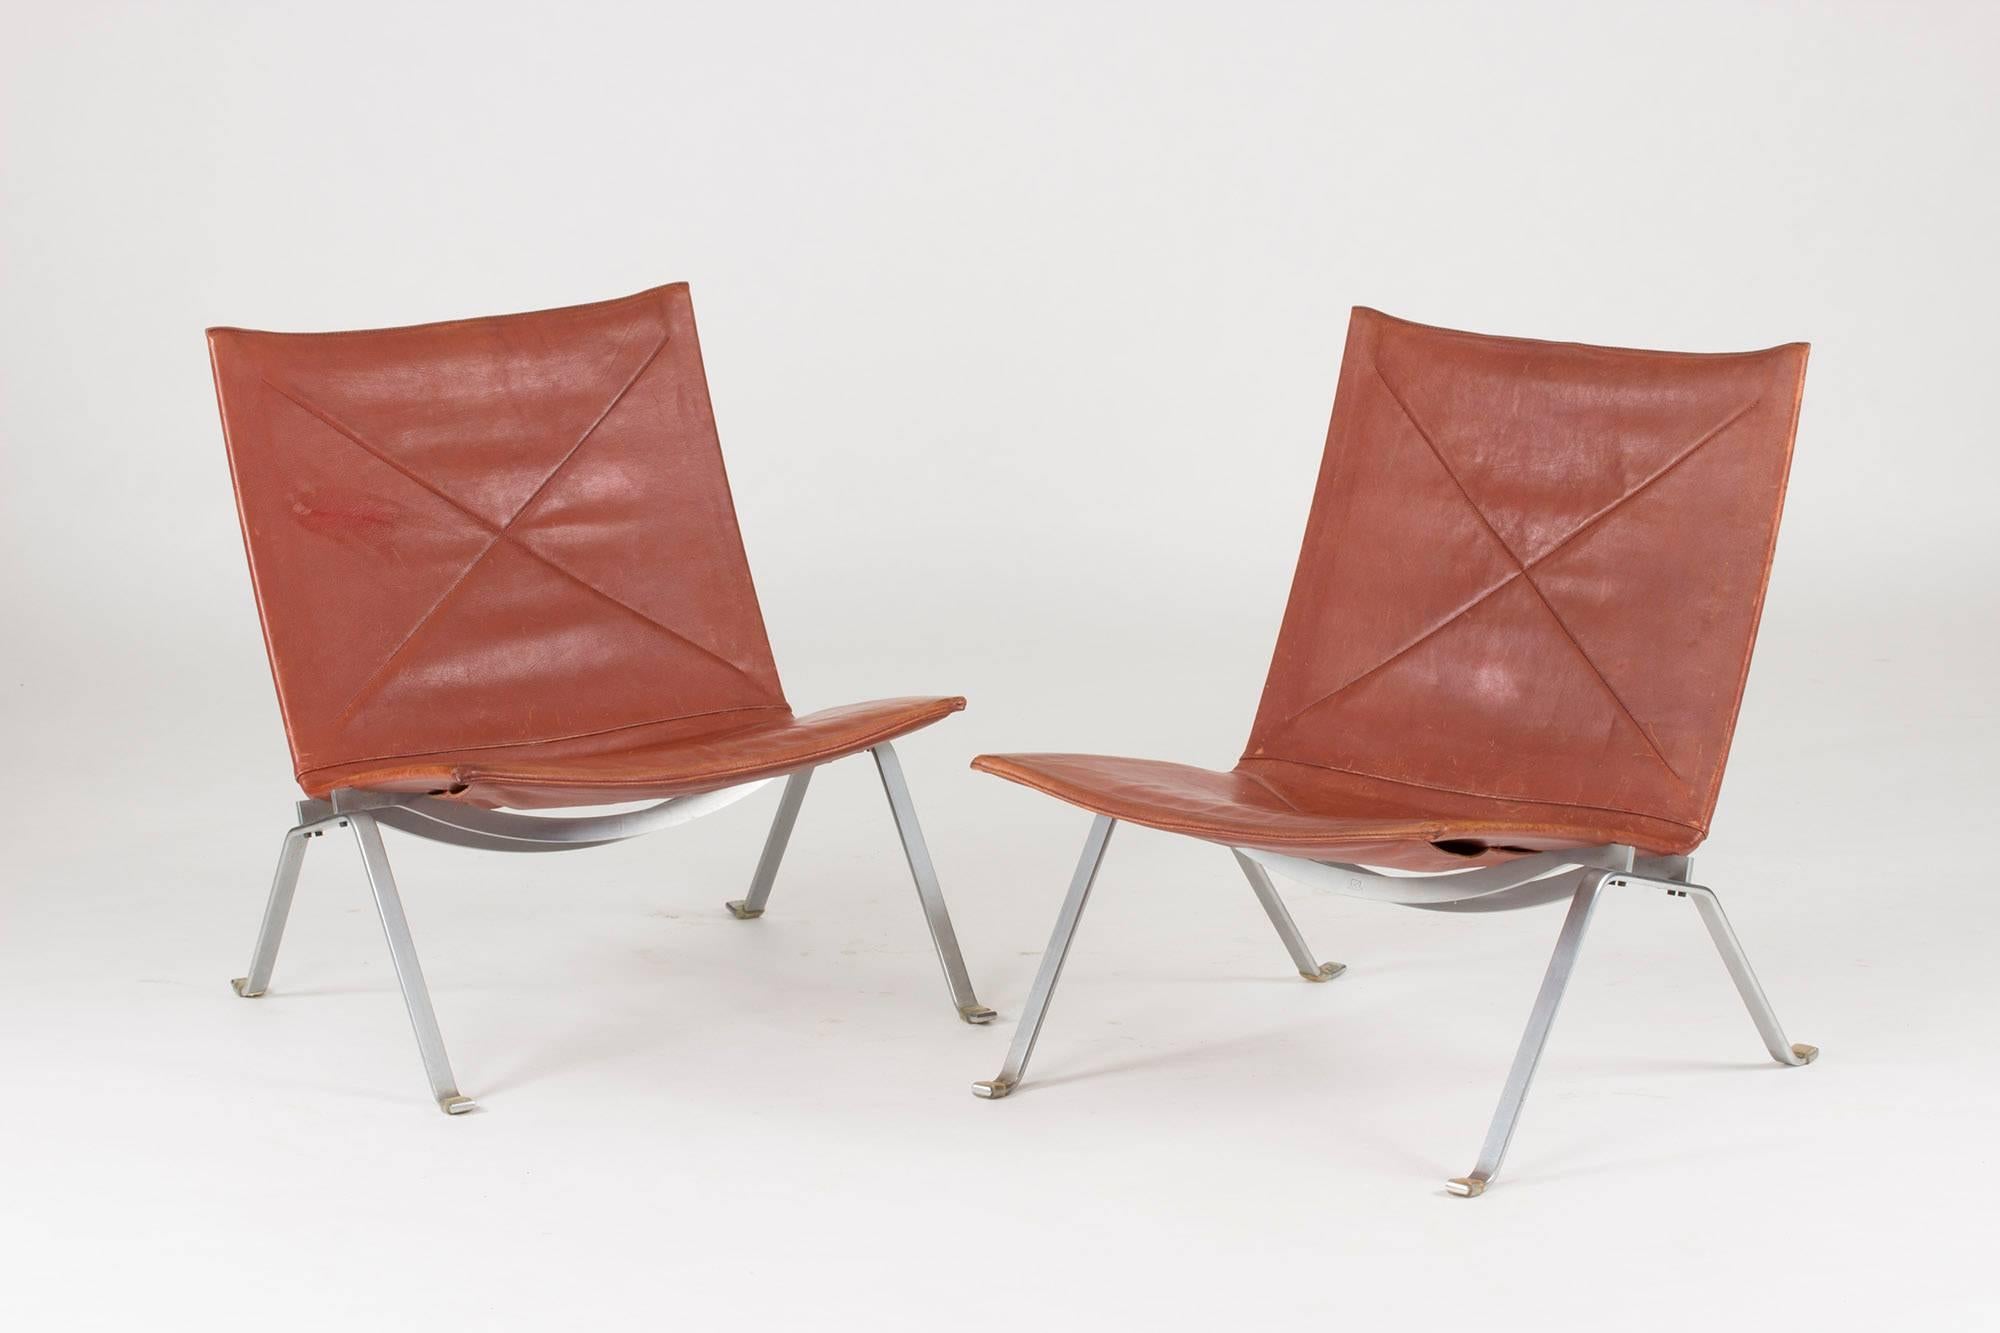 Steel Pair of “Pk 22” Lounge Chairs by Poul Kjaerholm